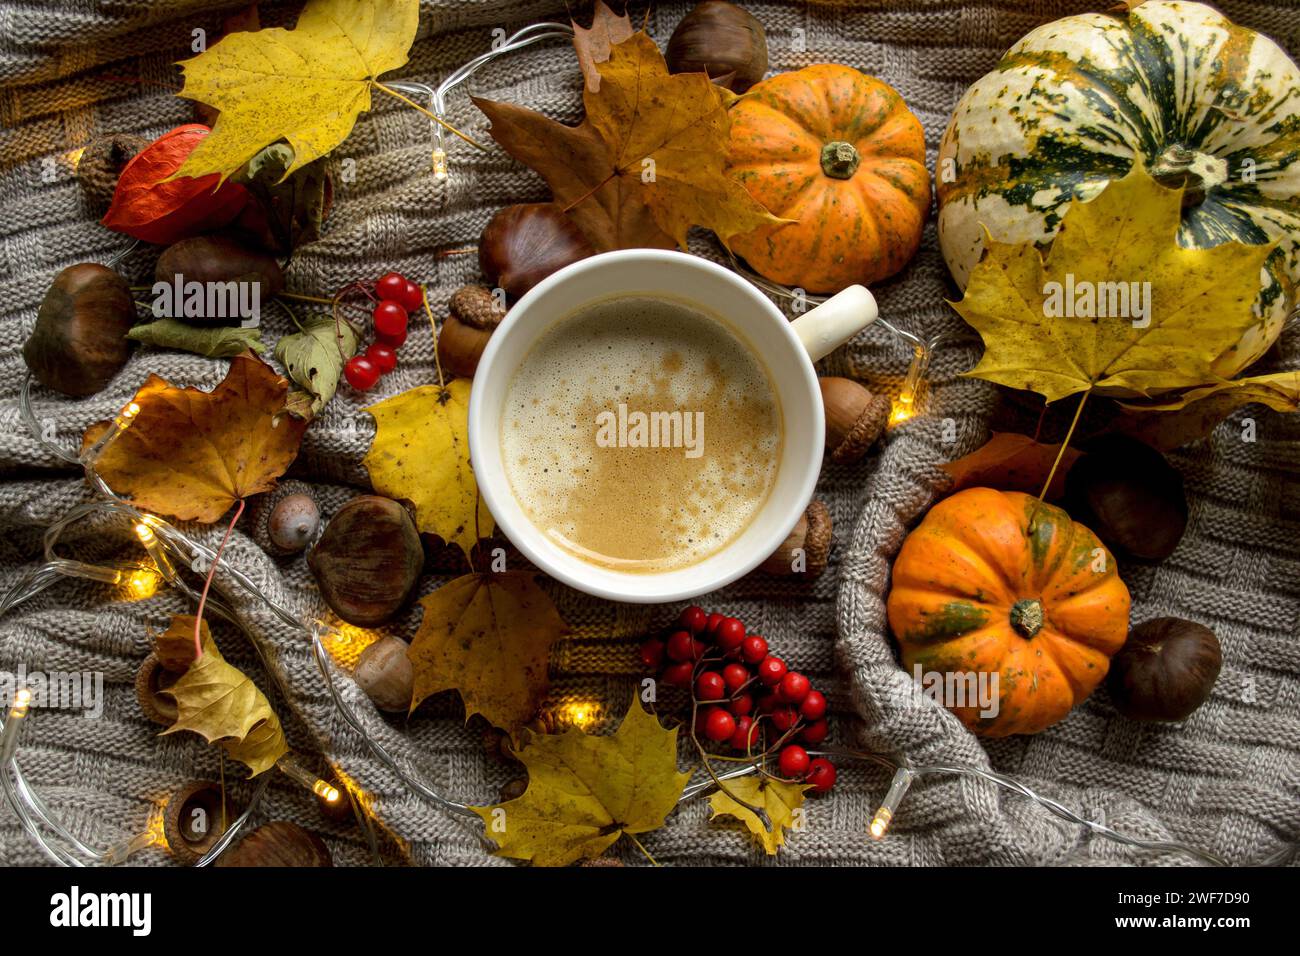 Une tasse de café chaud sur un plaid tricoté parmi les citrouilles, les châtaignes et les feuilles d'érable Banque D'Images